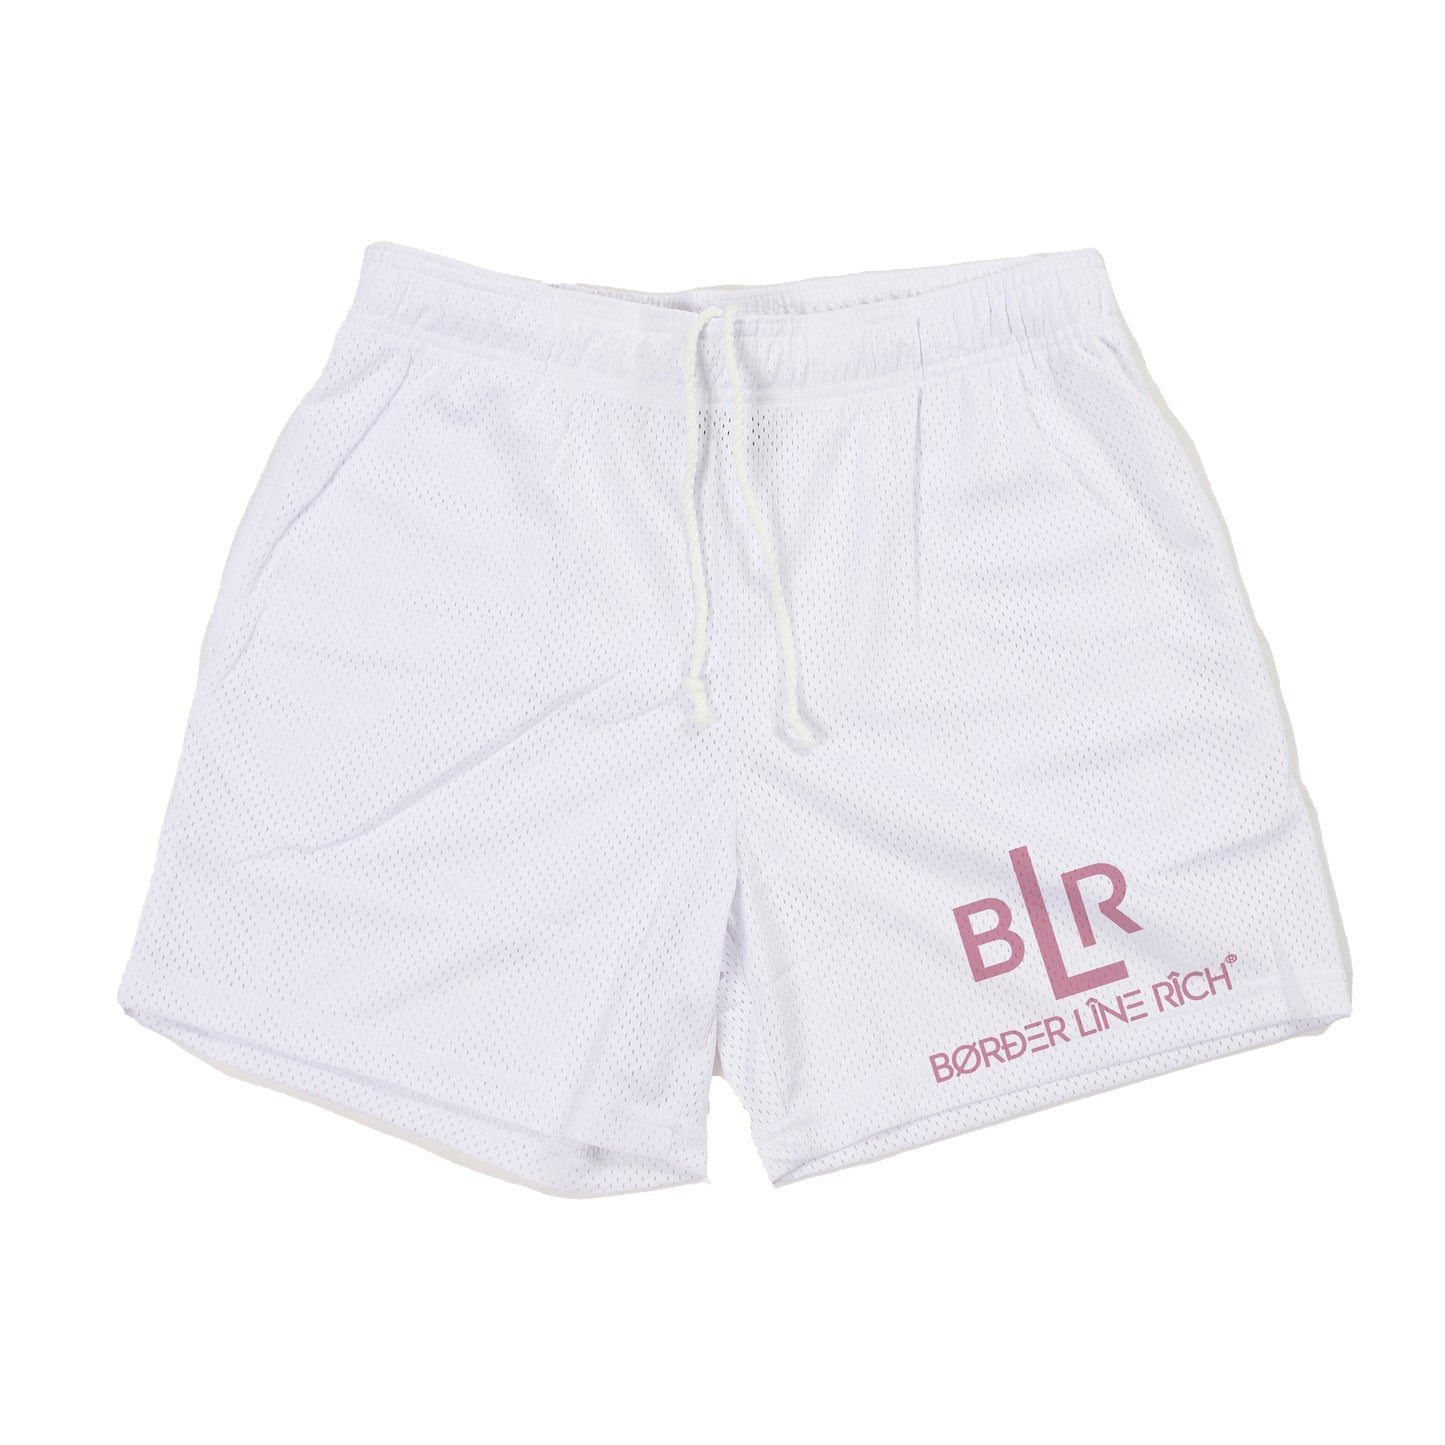 BLR Mesh Shorts